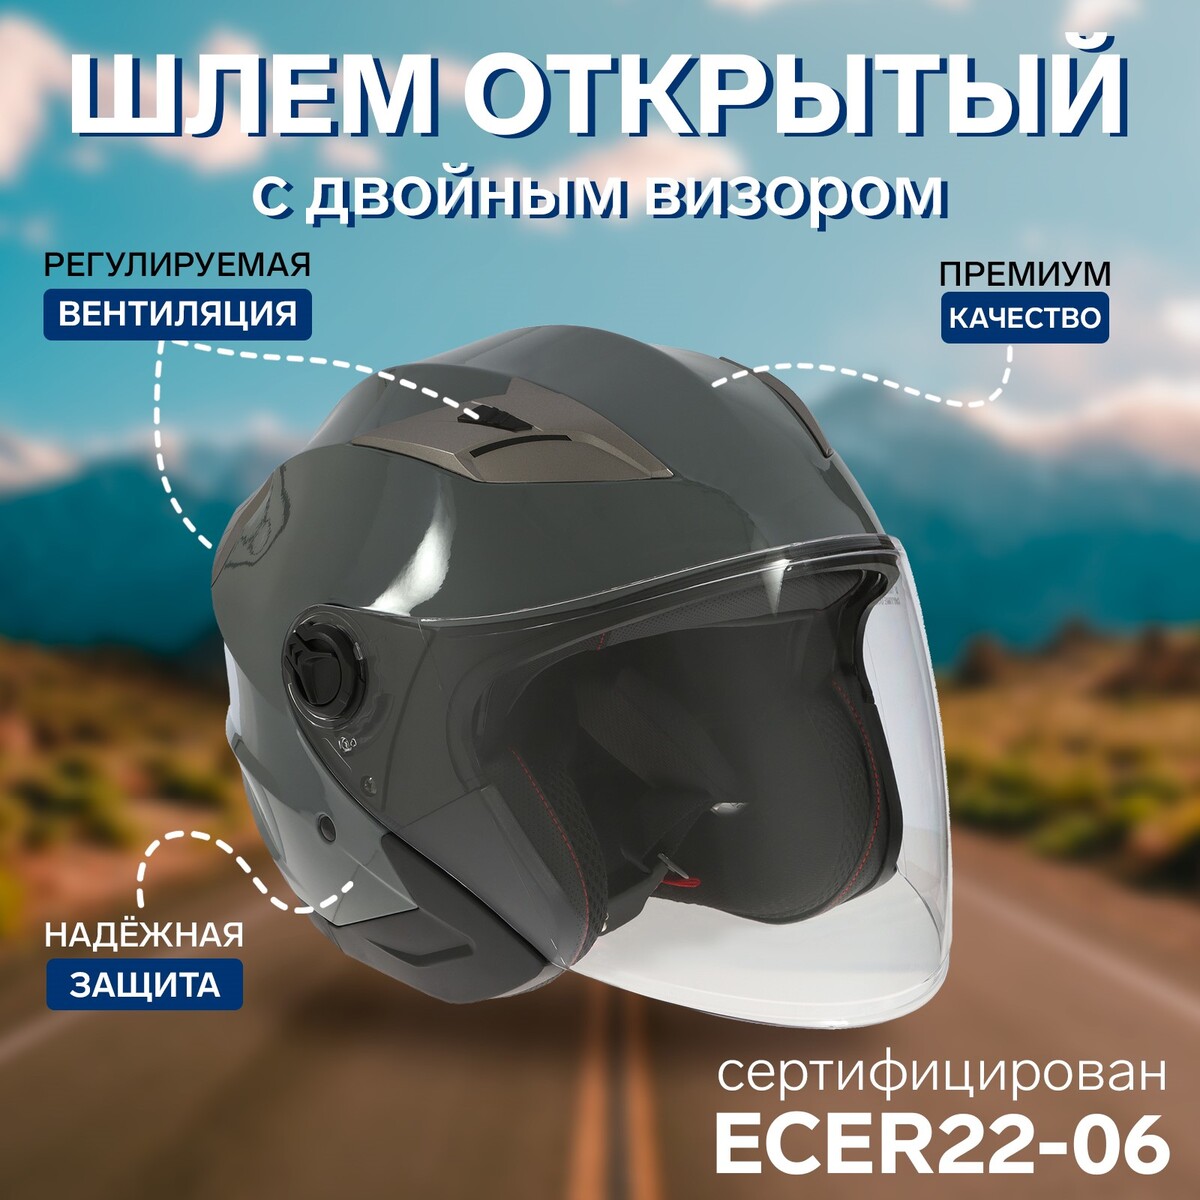 Шлем открытый с двумя визорами, размер s (55-56), модель - bld-708e, серый глянцевый